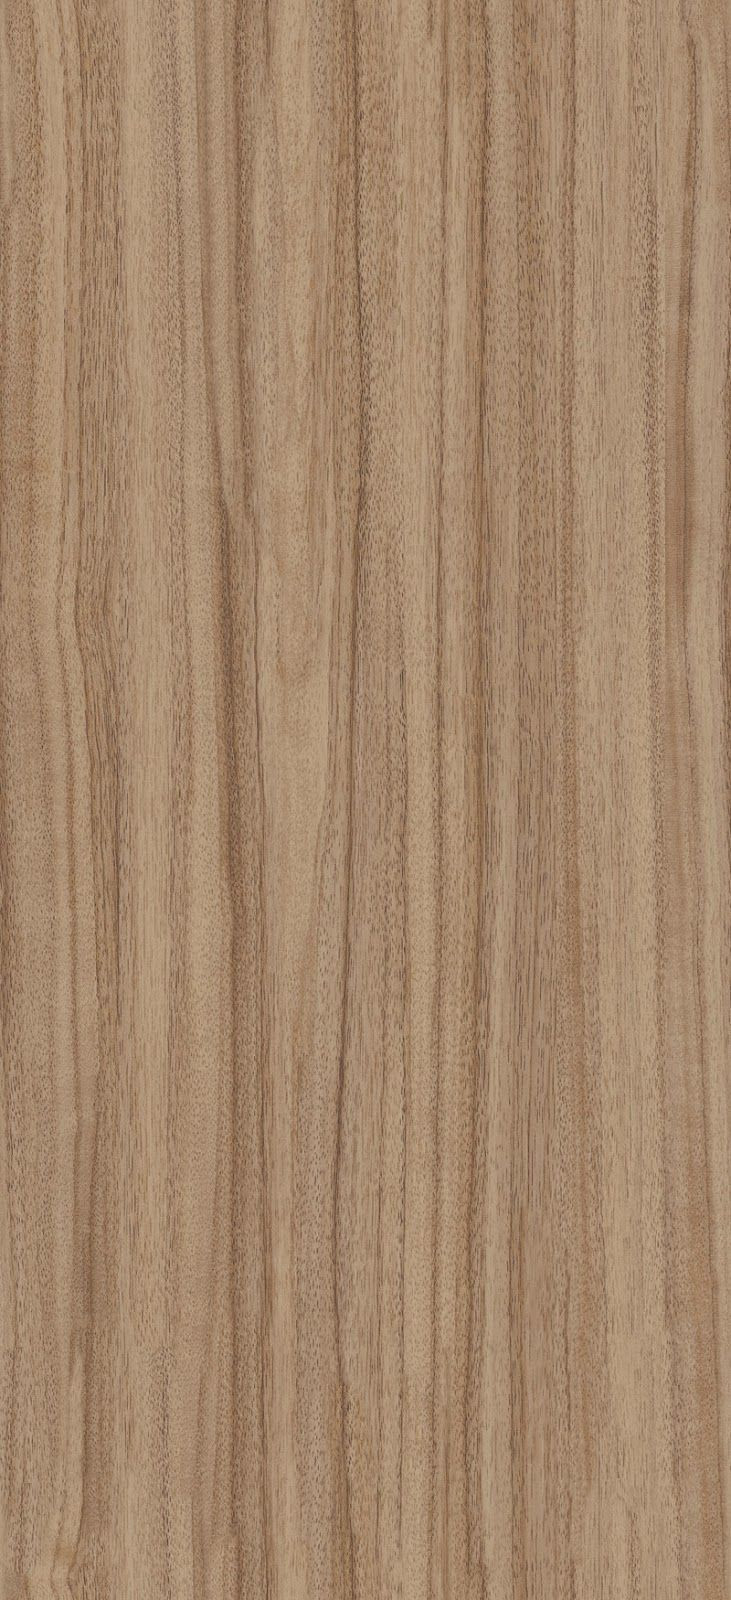 30 Elegant Hardwood Floor Texture 2024 free download hardwood floor texture of seamless french walnut wood texture texturise texturise in seamless french walnut wood texture texturise texturise textures pinterest wood texture walnut wood textu